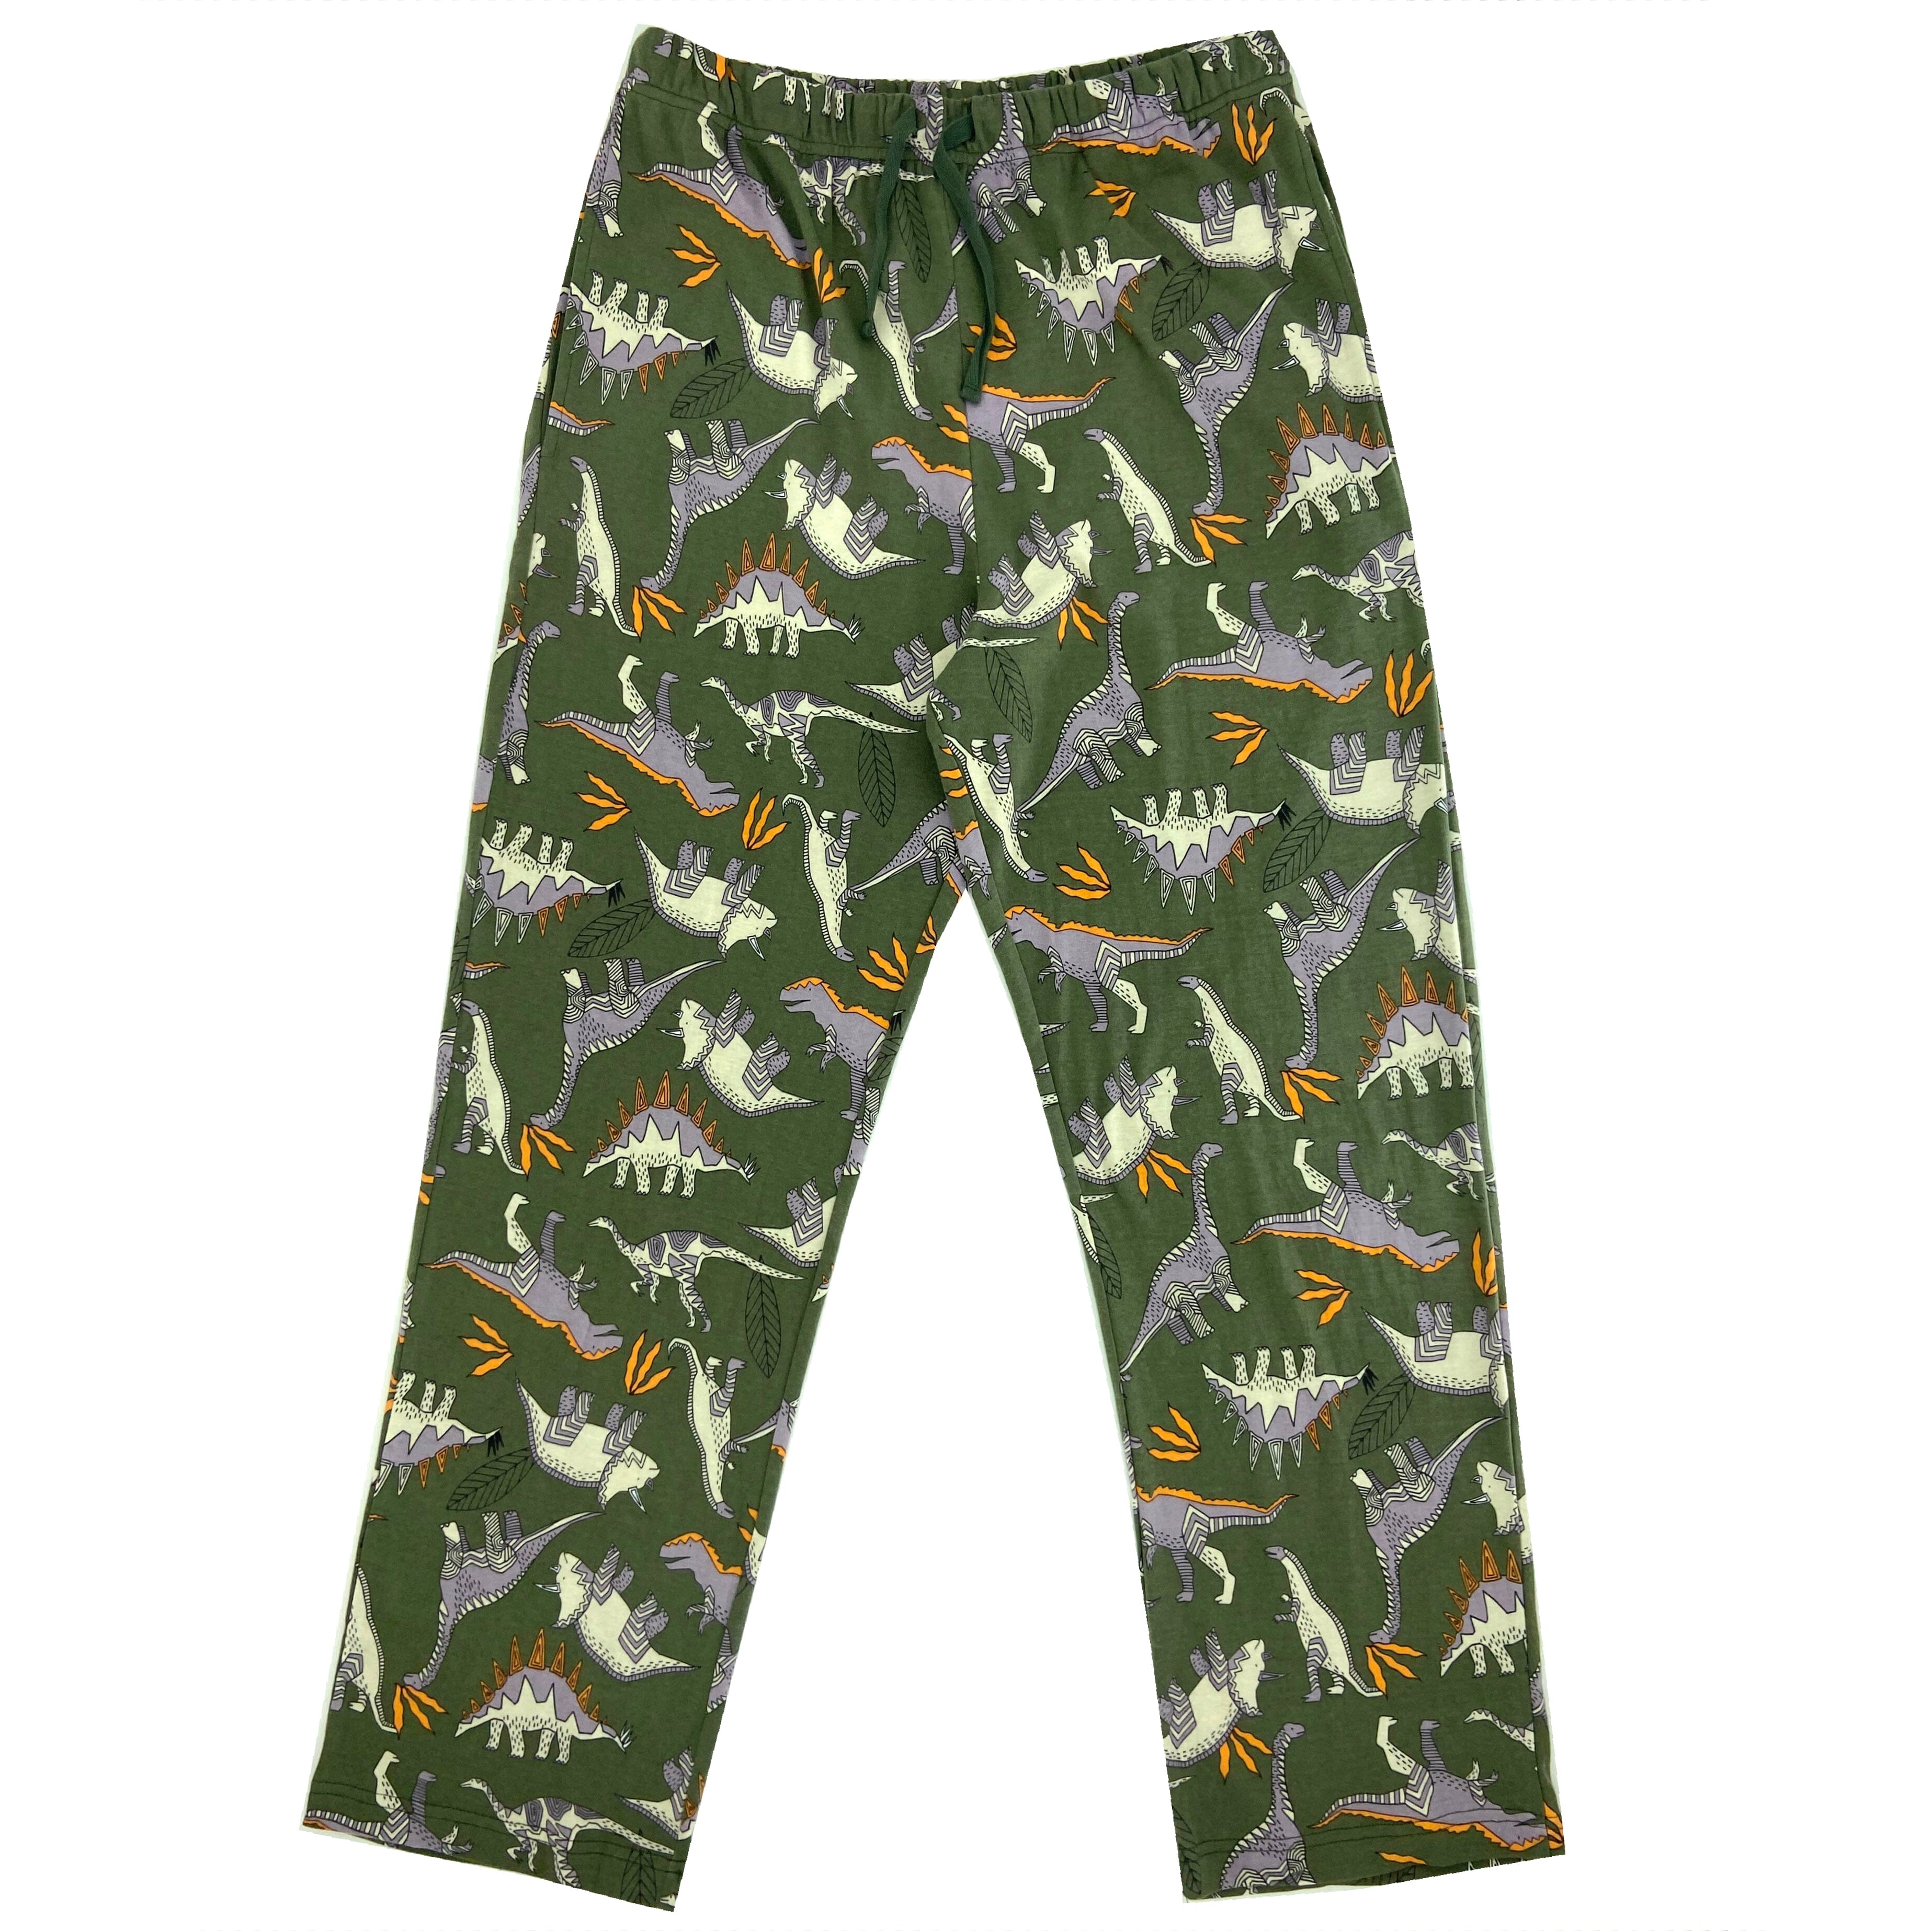 Men's Dinosaur Fossil Novelty Print Cotton Knit Long Pyjama Bottoms